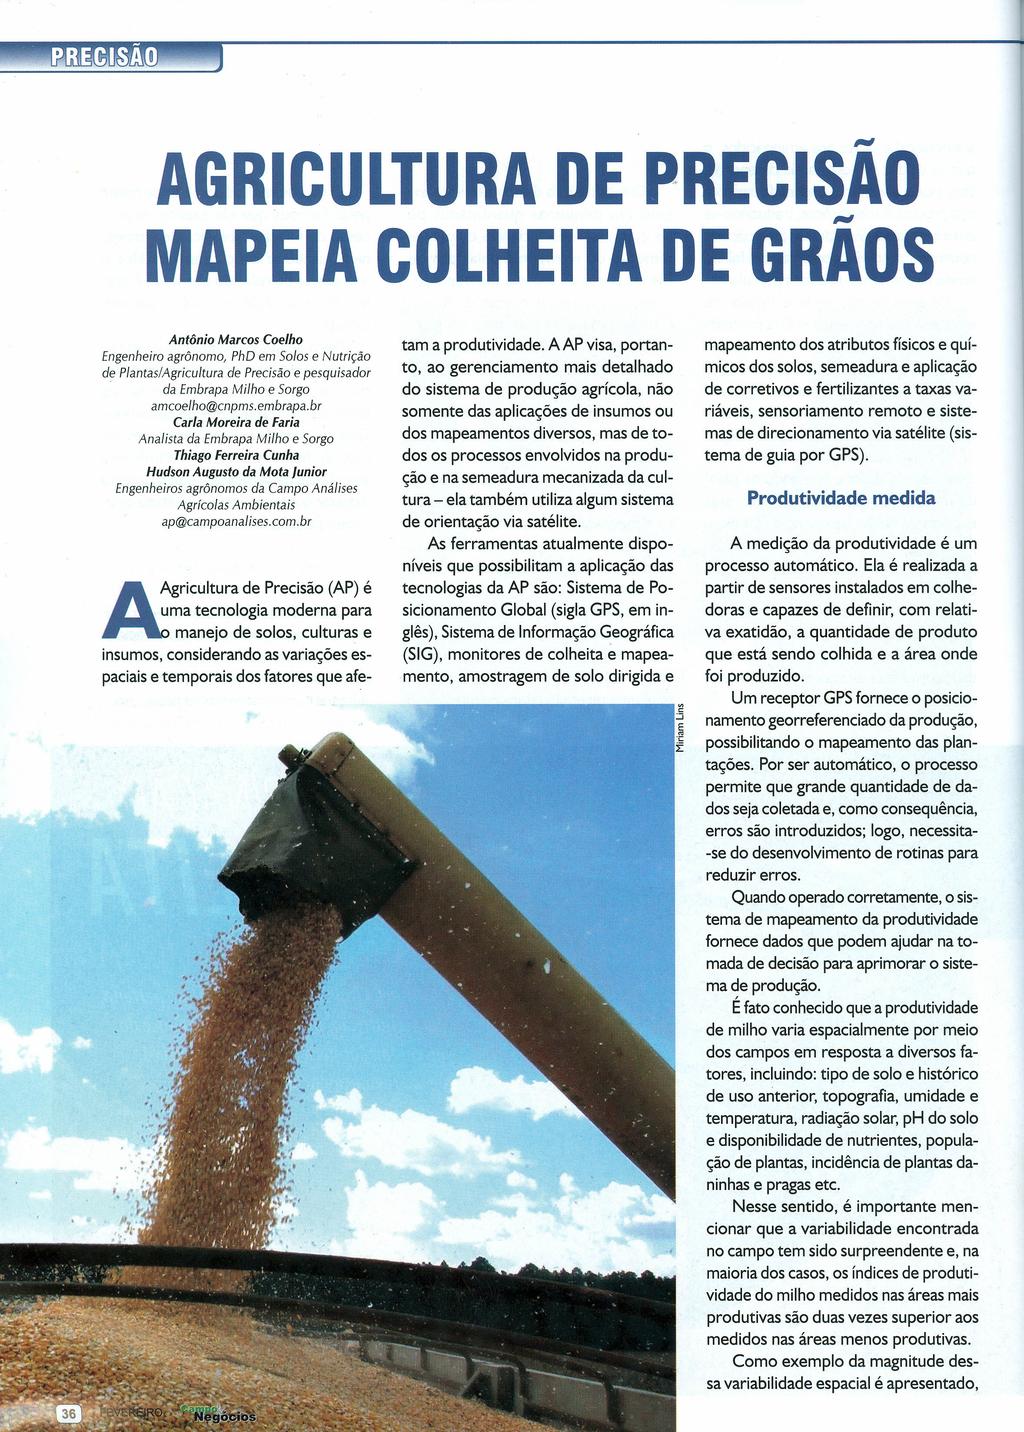 AGRICULTURA DE PRECISAO "" MAPEIA COLHEITA DE GRAOS Antônio Marcos Coelho Engenheiro agrônomo, PhO em Solos e Nutrição de Plantas/Agricultura de Precisão e pesquisador.